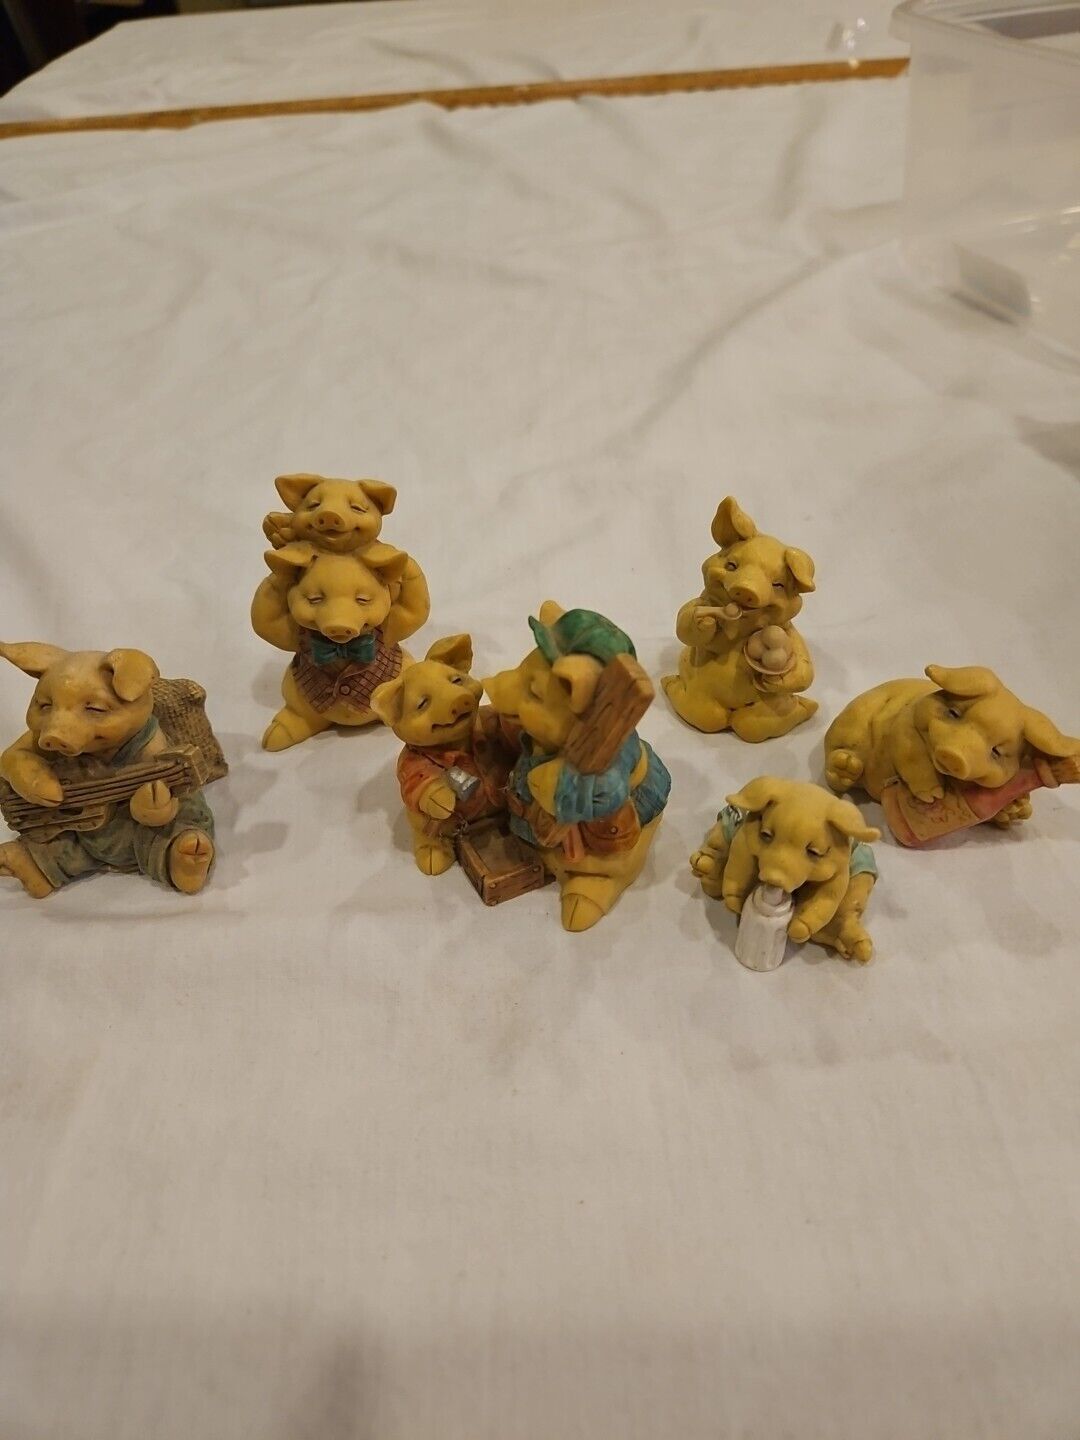 6 Pigsville Ceramic Pig Figurines, 1992-1995